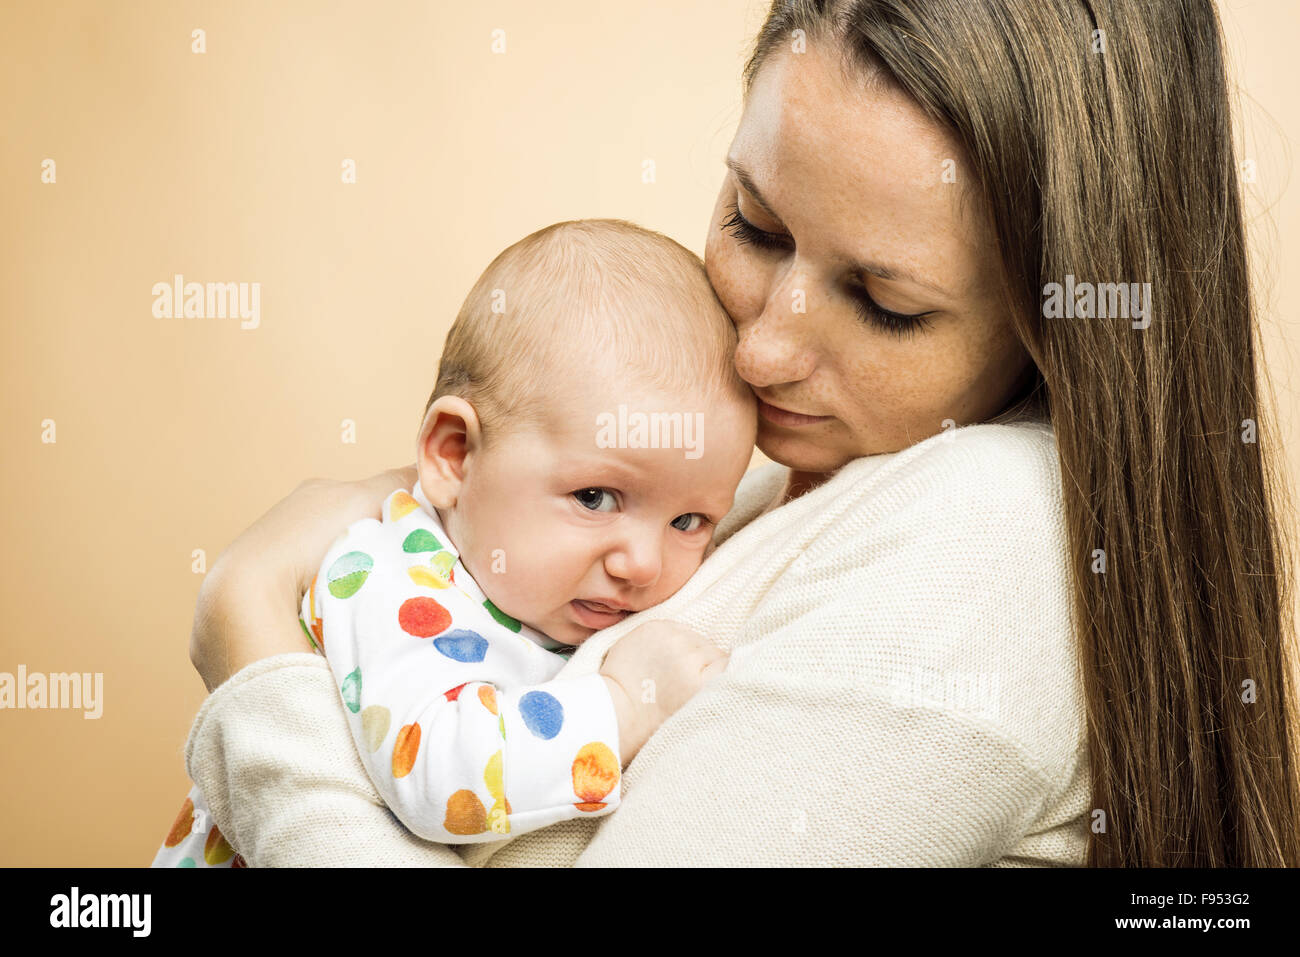 Weinendes Kind mit Mutter Studio gedreht auf Beige Hintergrund Stockfoto